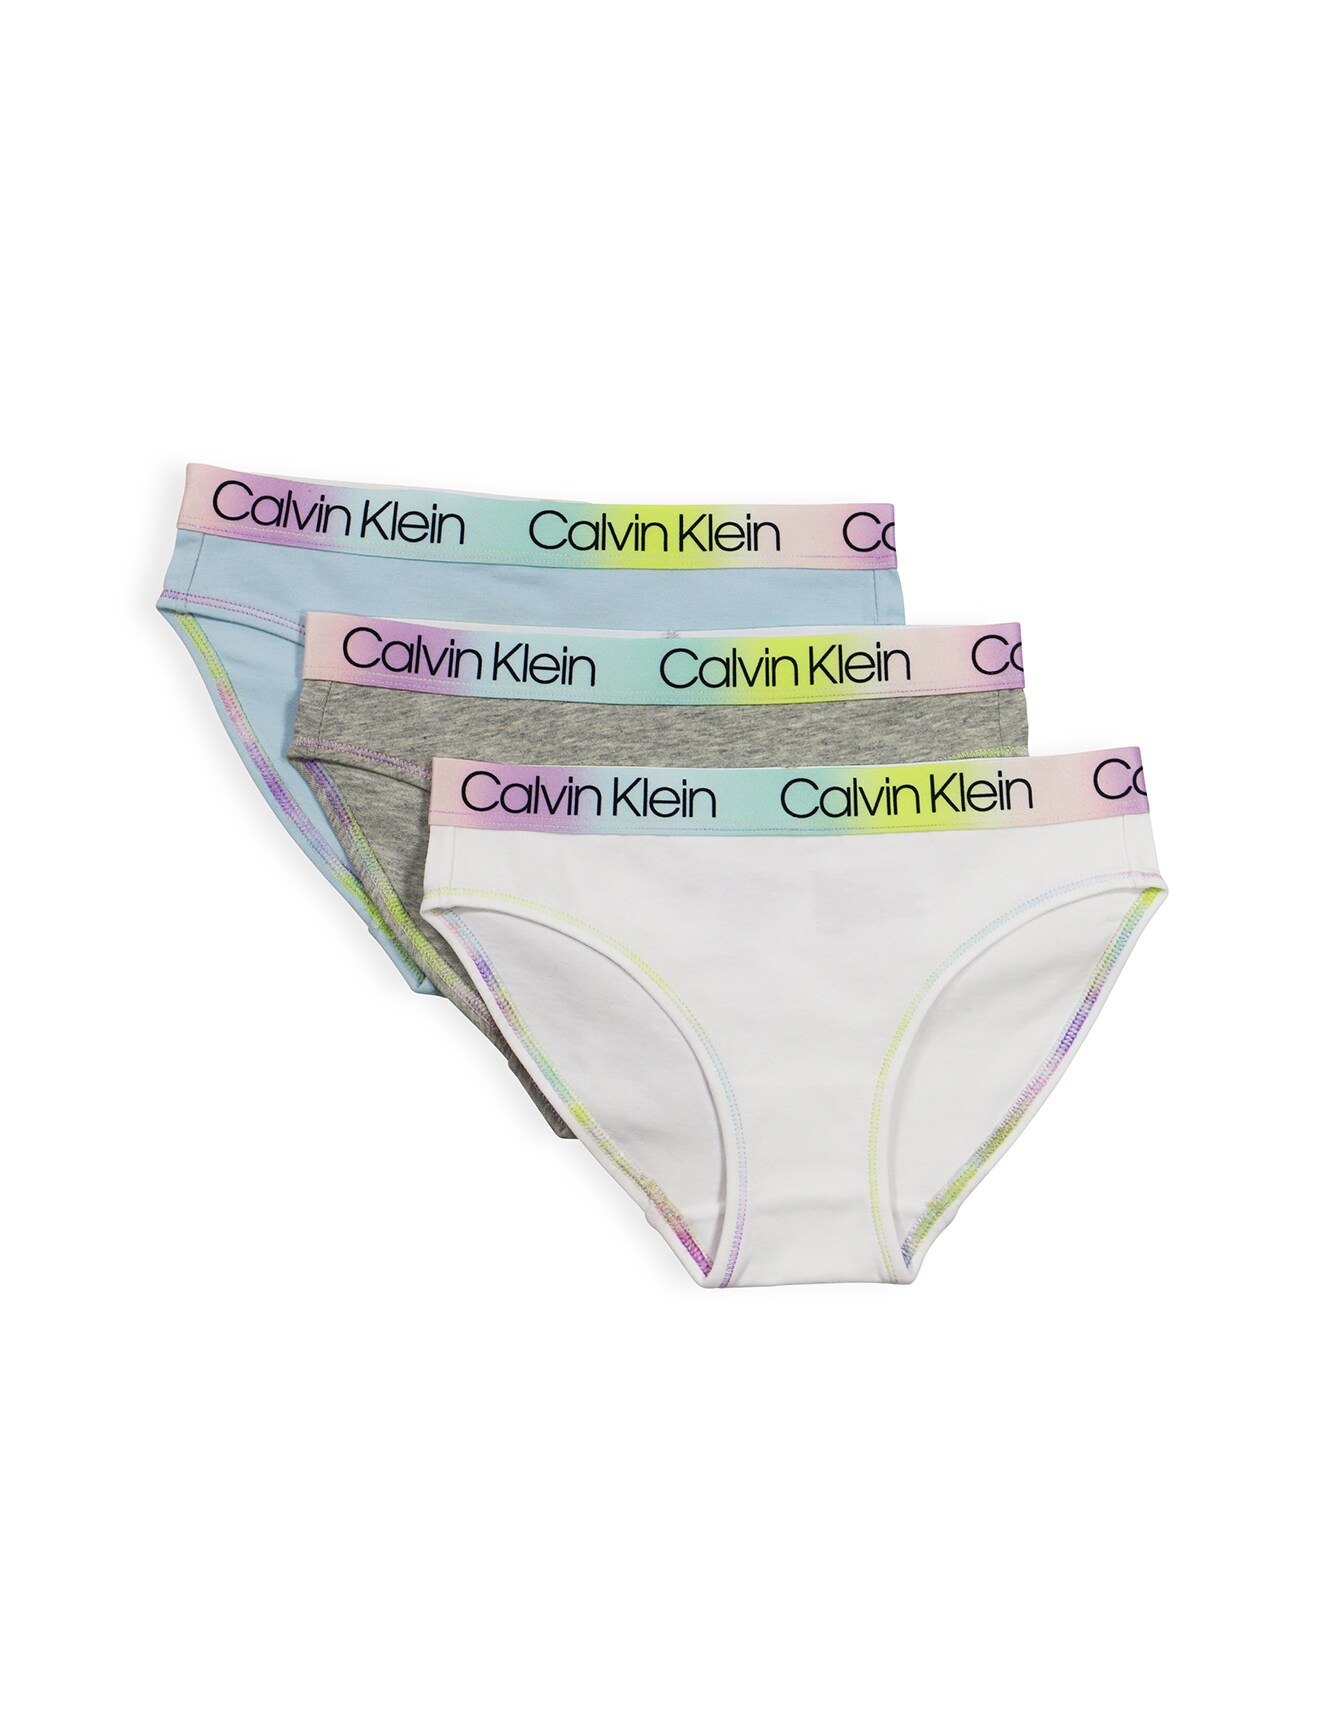 Calvin Klein Bikini Brief, 3-Pack, Rainbow - Underwear